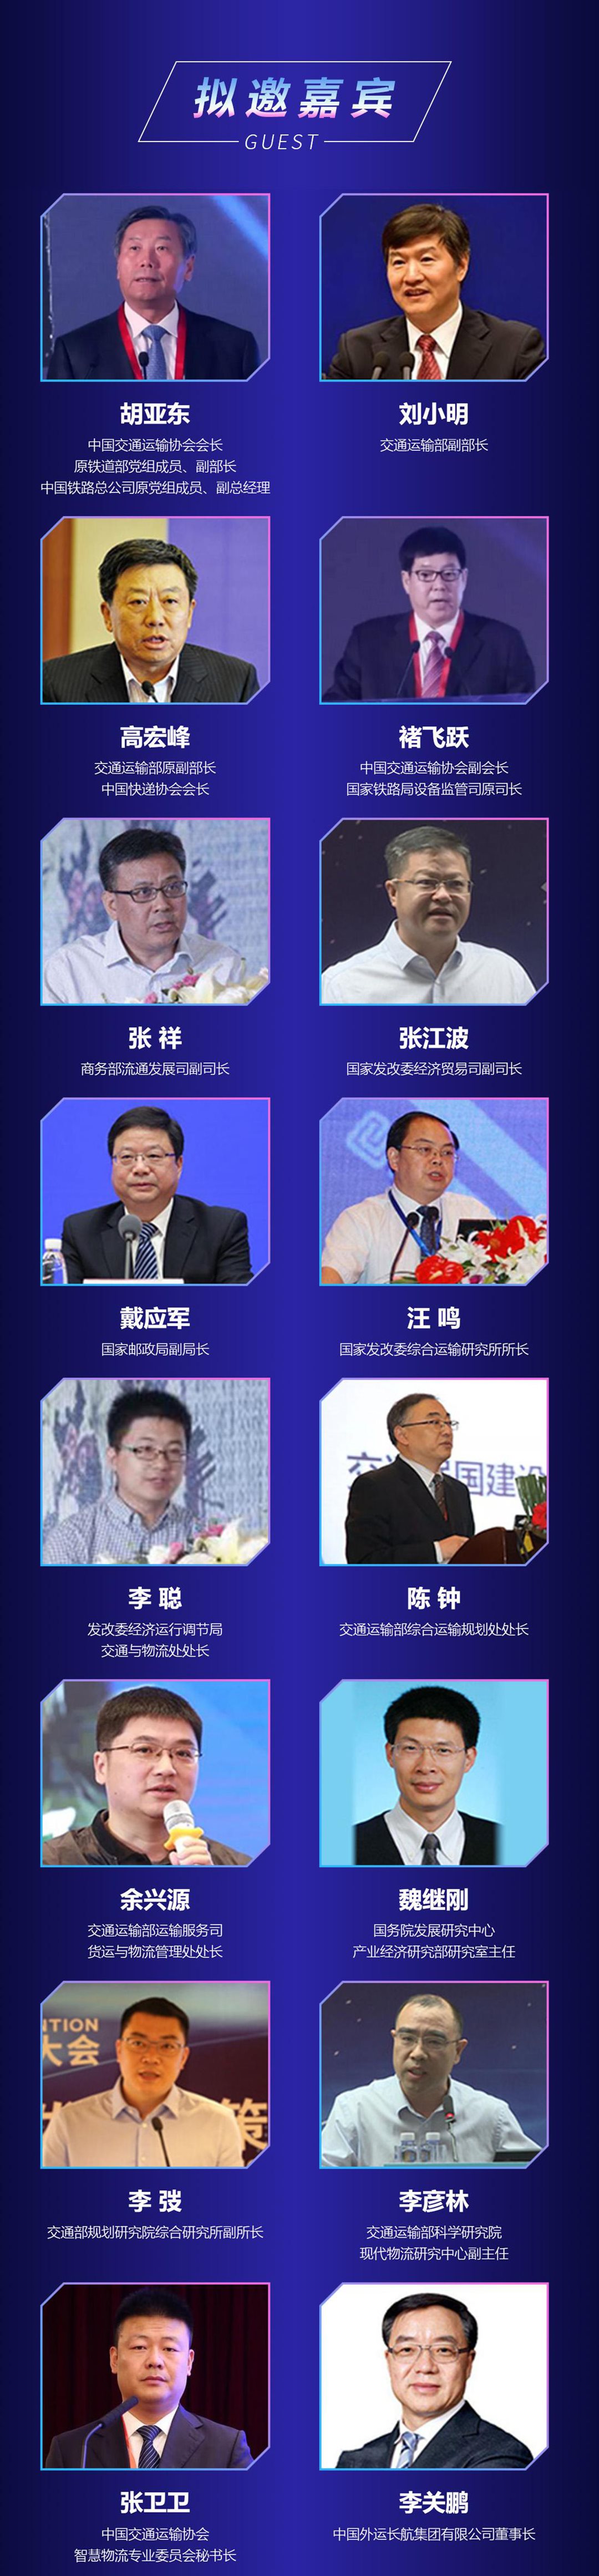 第三届中国智慧物流大会